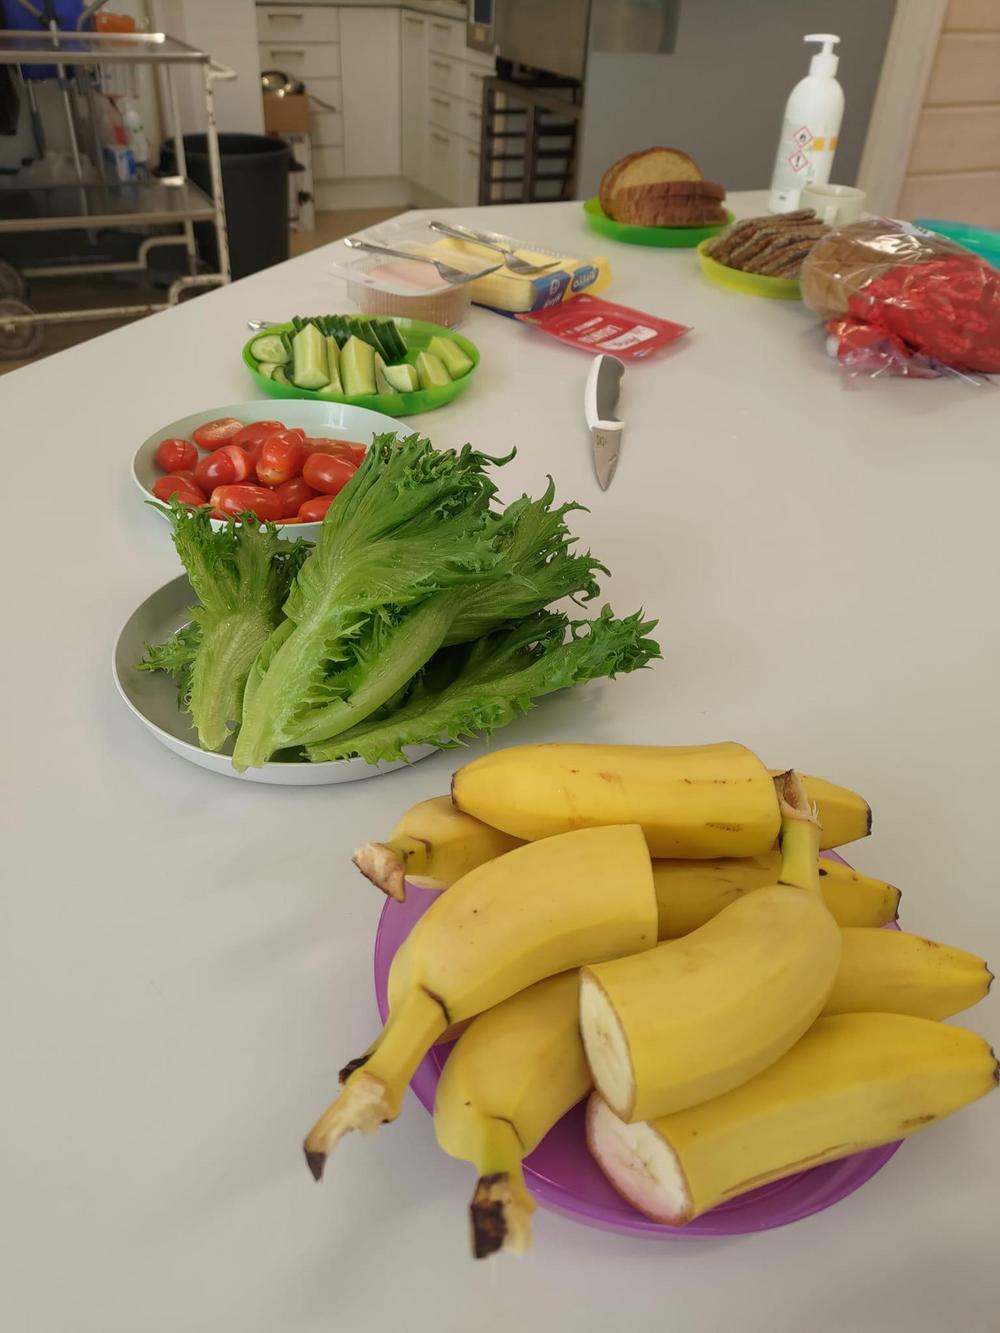 Kuvassa on aamupalatarvikkeita: leipää, margariinia, juustoa, kinkkua, kurkkua, tomaattia, salaattia ja banaaneja.